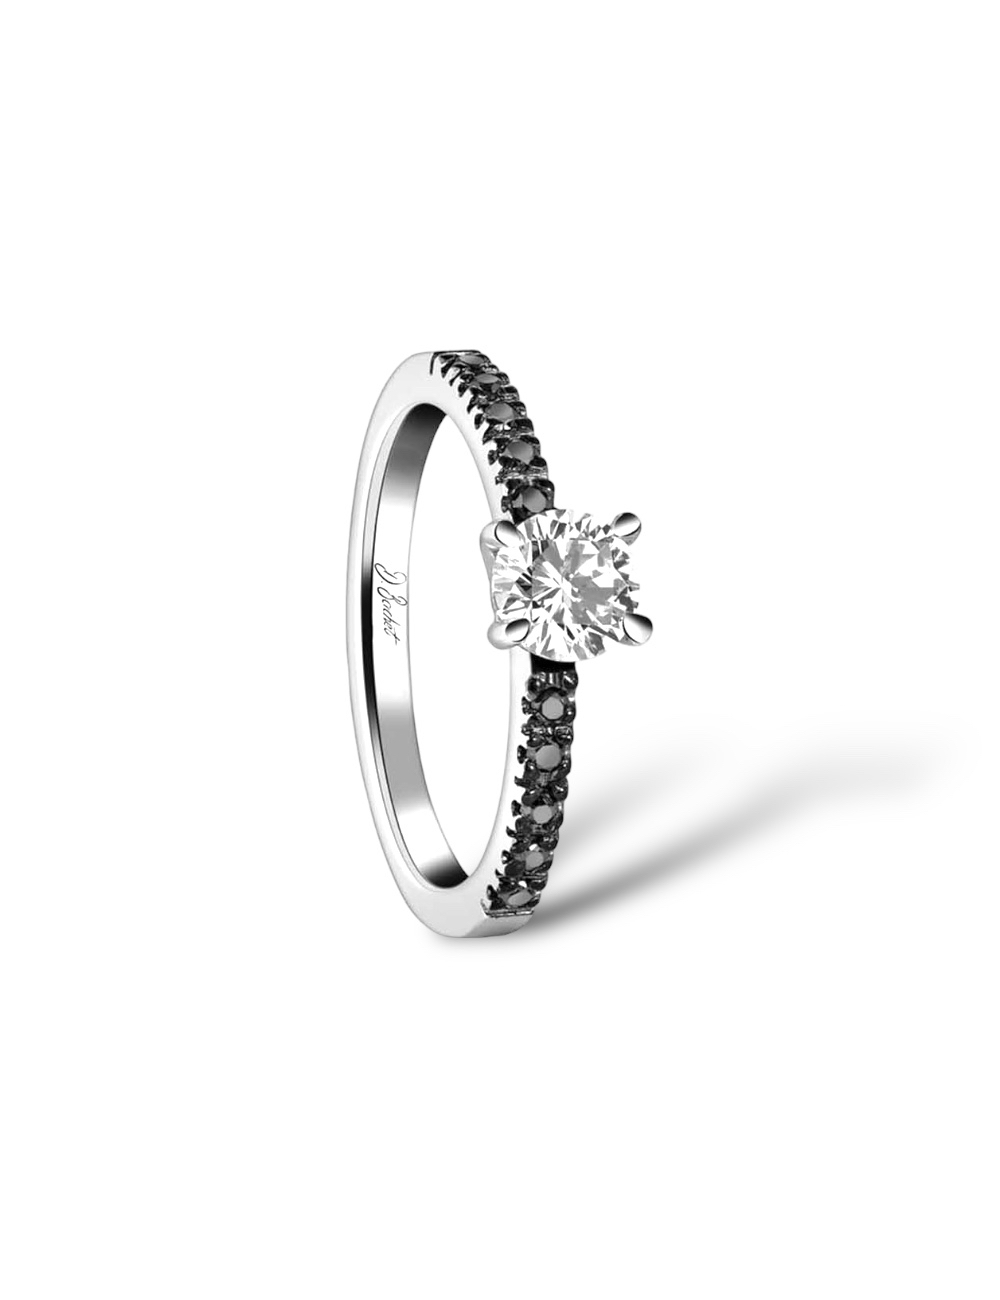 Bague fiançailles: platine, diamant blanc central, diamants noirs pavés, monture serti griffes.